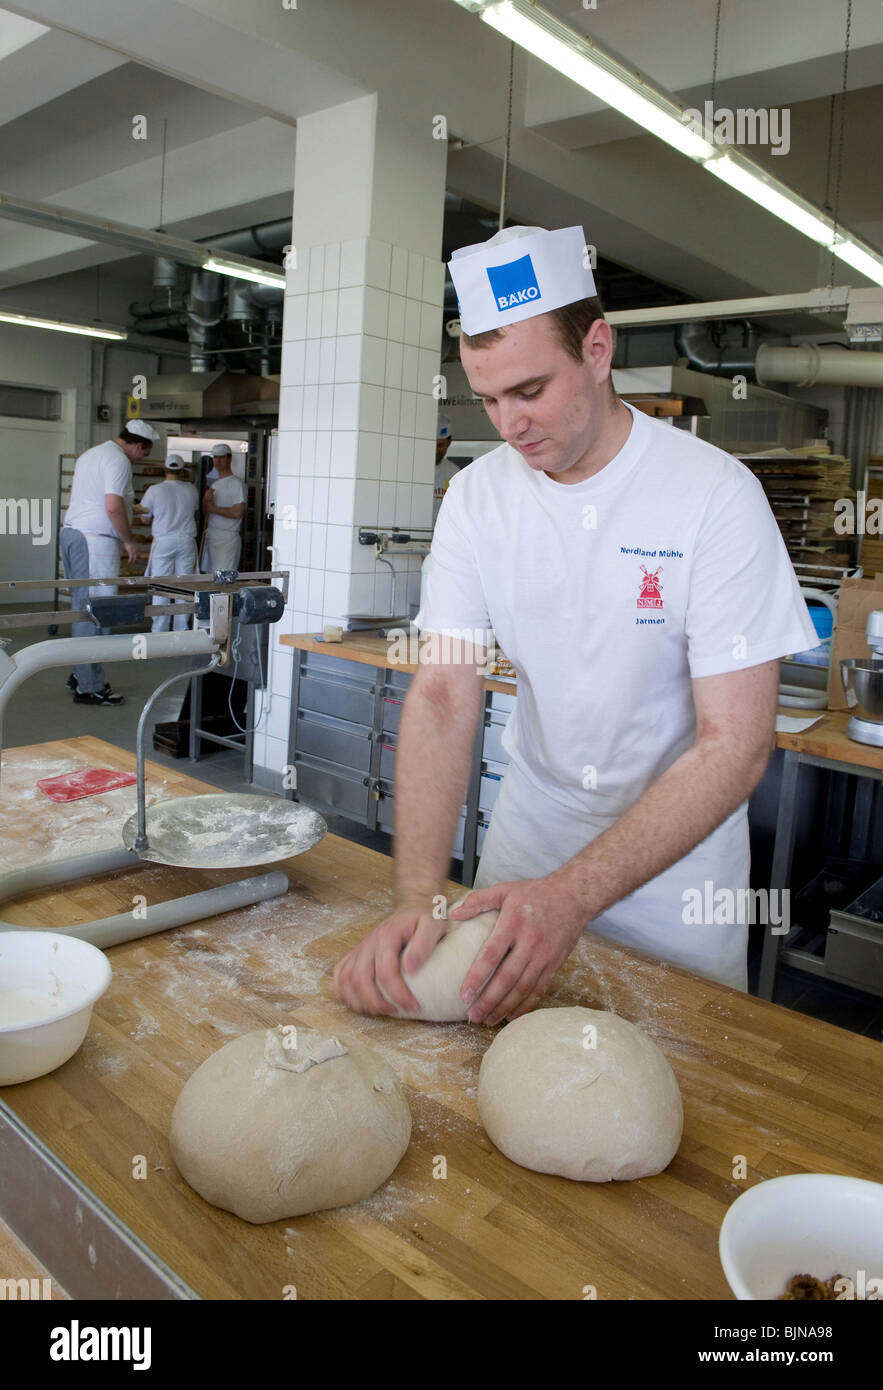 Educating master bakers, Potsdam, Germany Stock Photo